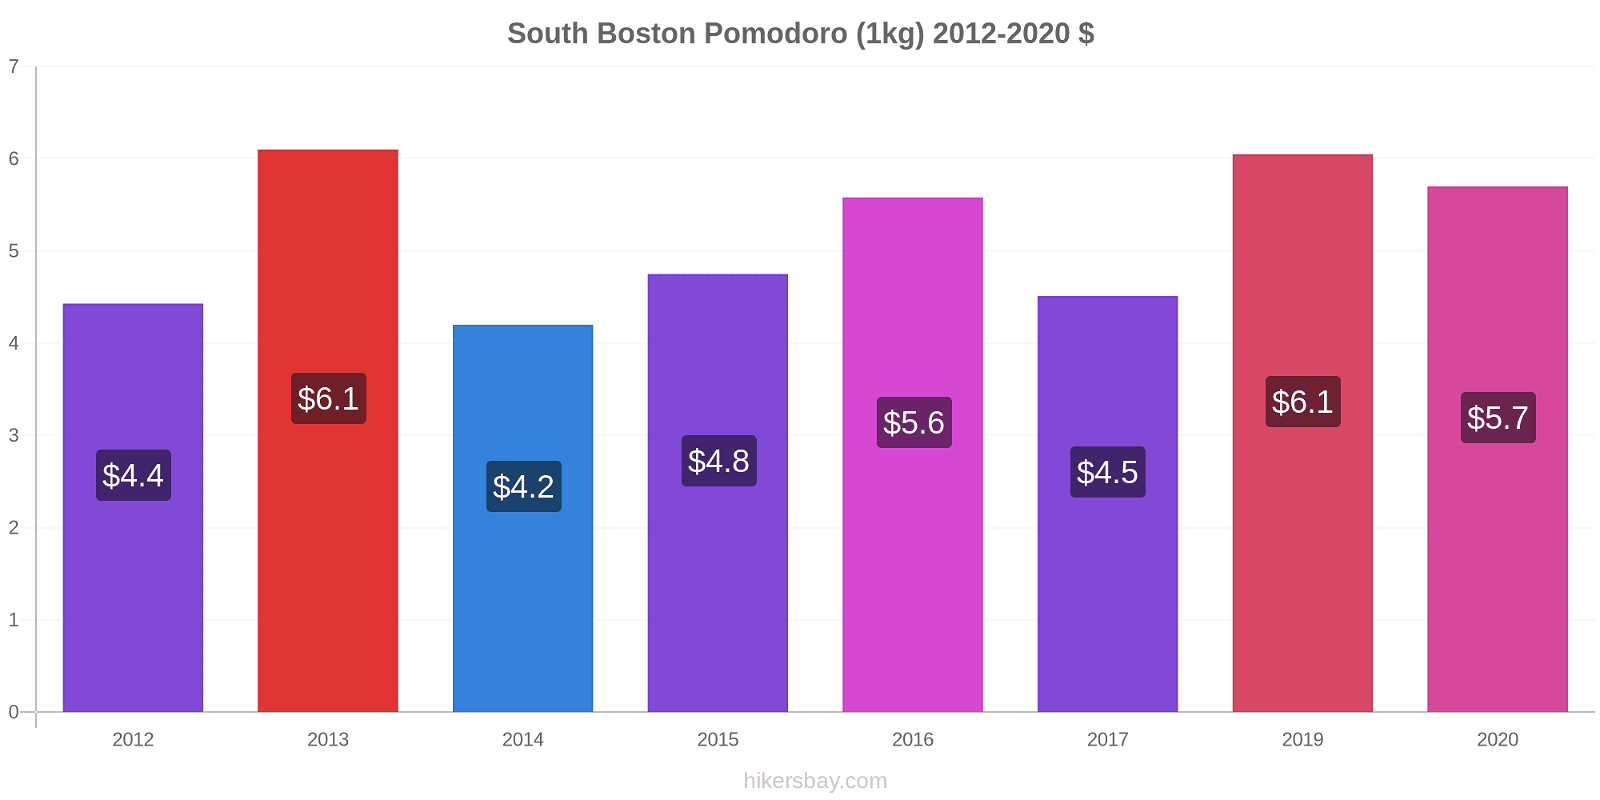 South Boston variazioni di prezzo Pomodoro (1kg) hikersbay.com